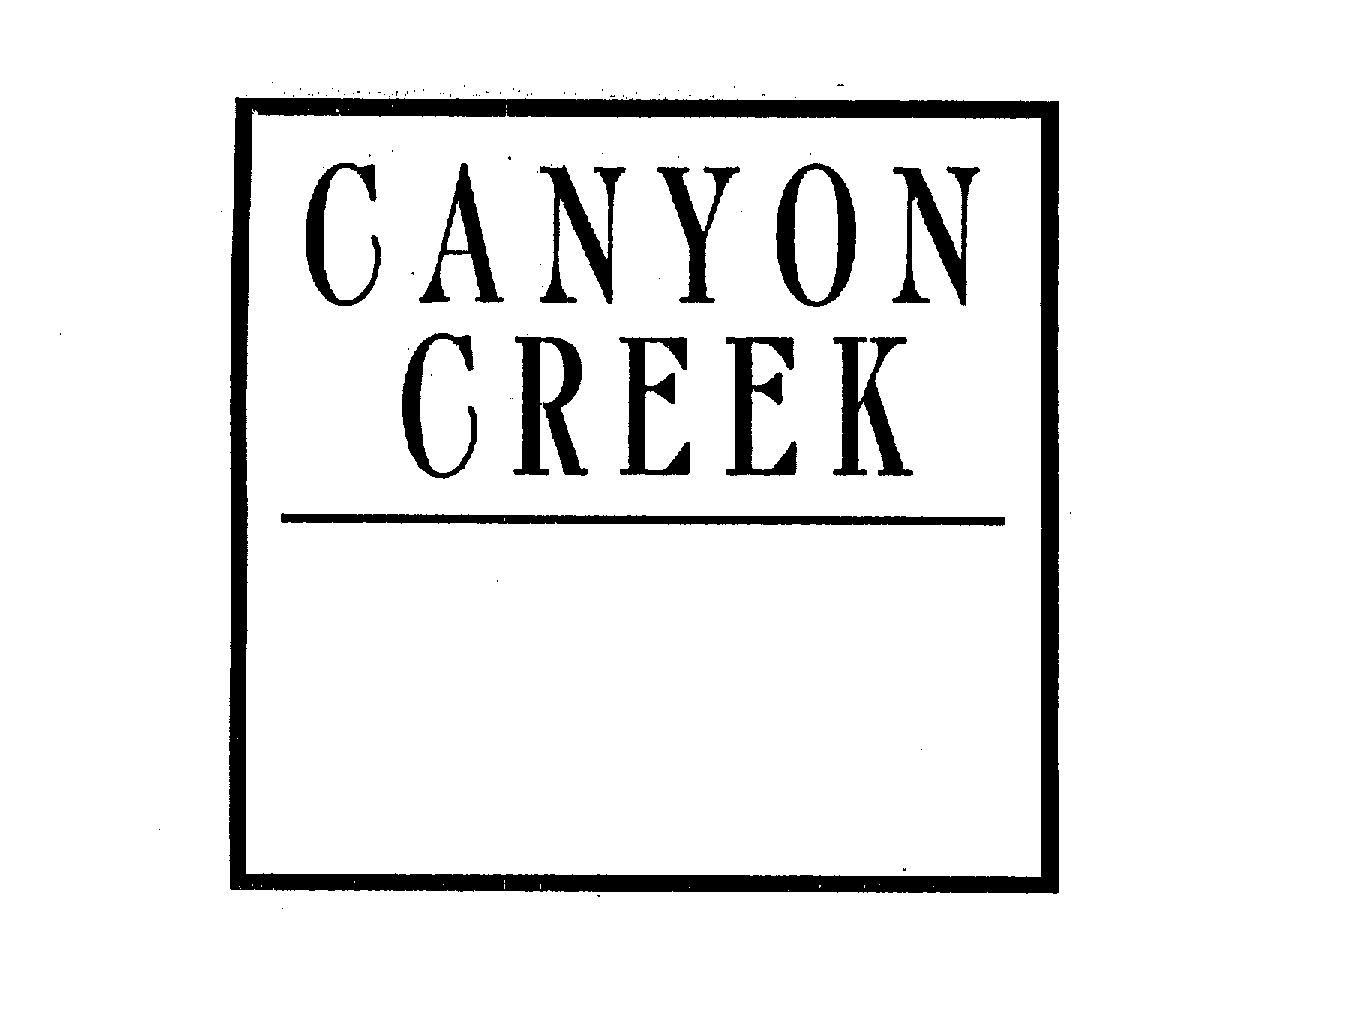  CANYON CREEK